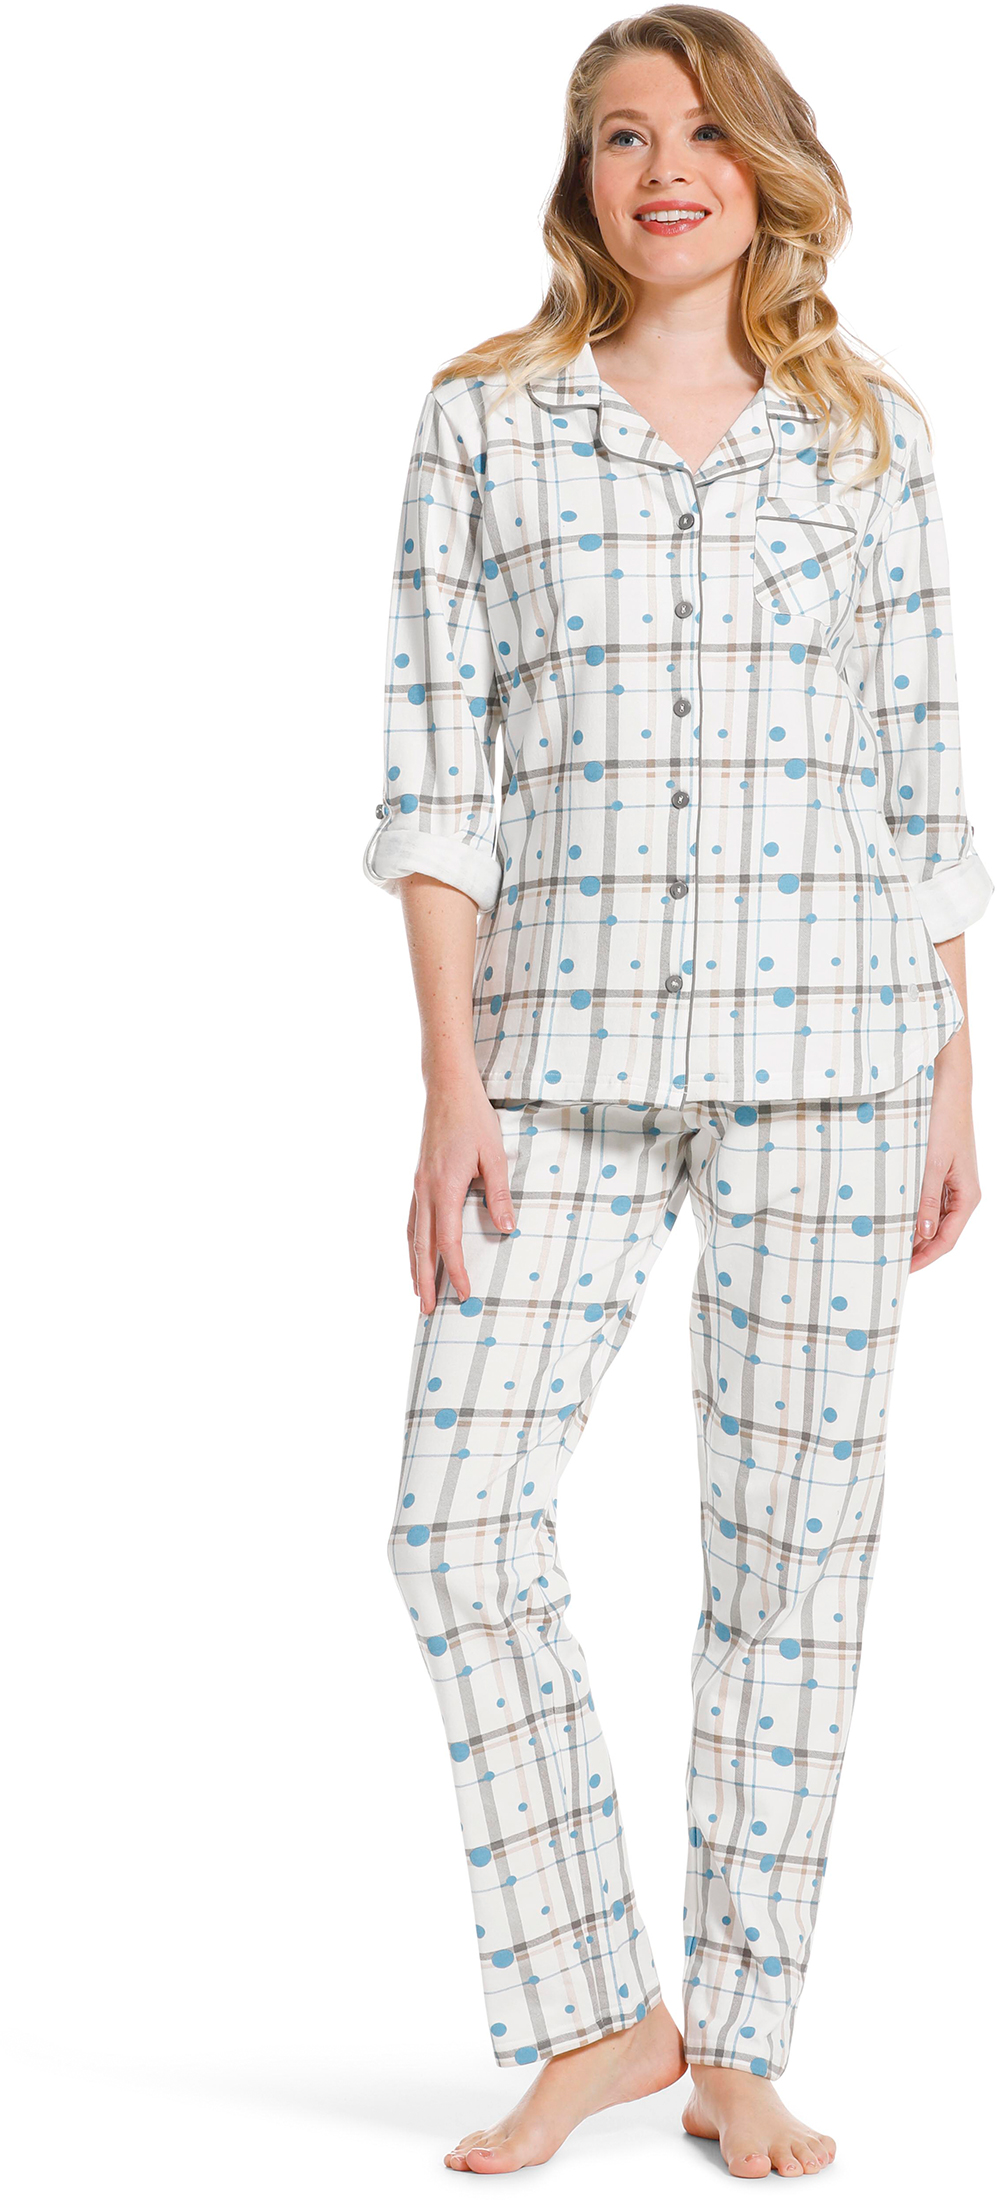 Pastunette dames doorknoop pyjama 20222 142 6 40